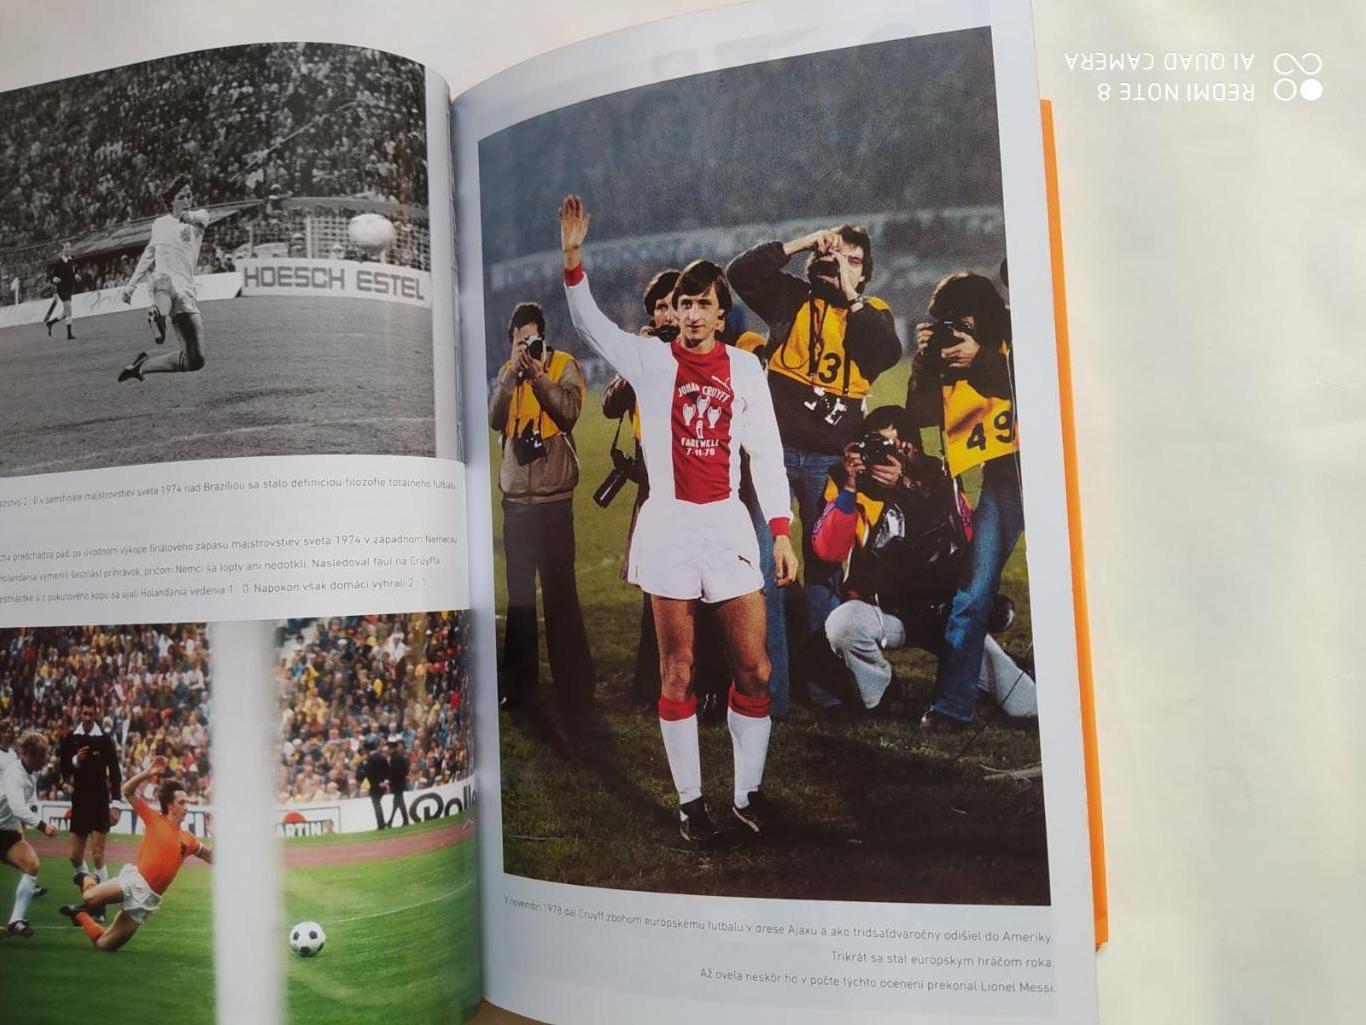 Johan Cruyff Autobiografia Йохан Кройфф. Моя жизнь Автобиография 2017 г. 2